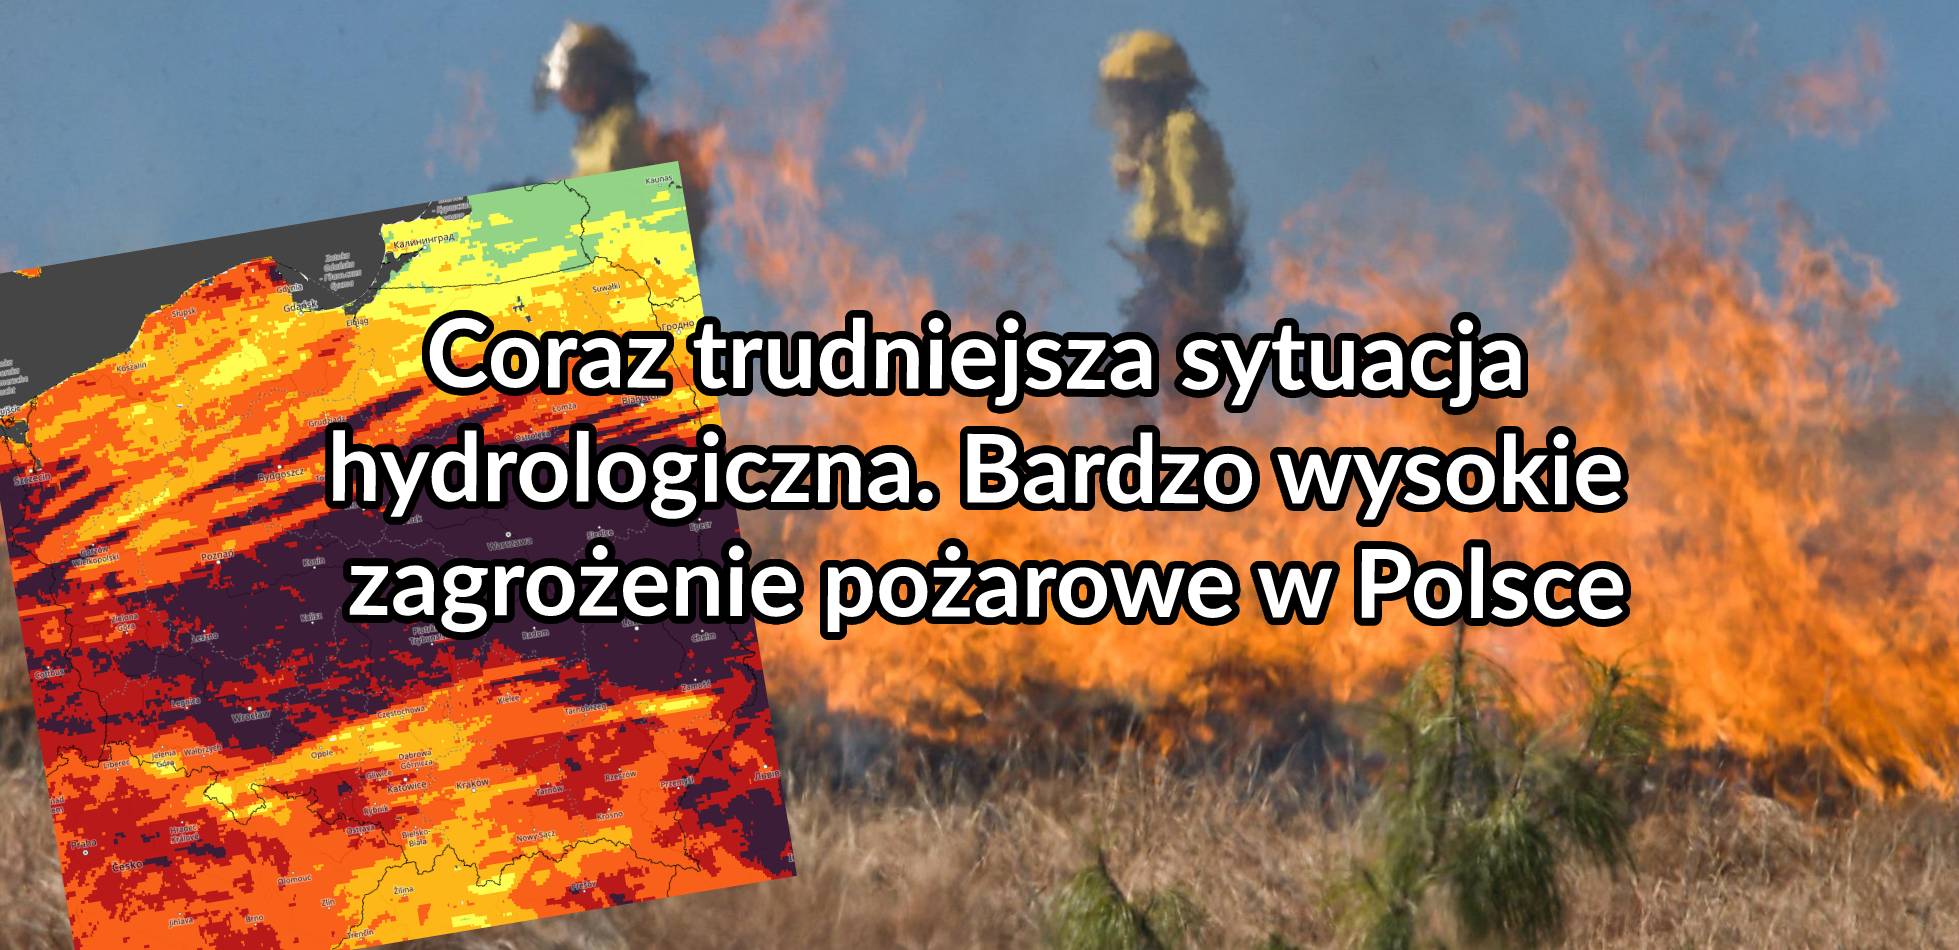 Coraz trudniejsza sytuacja hydrologiczna. Bardzo wysokie zagrożenie pożarowe w Polsce